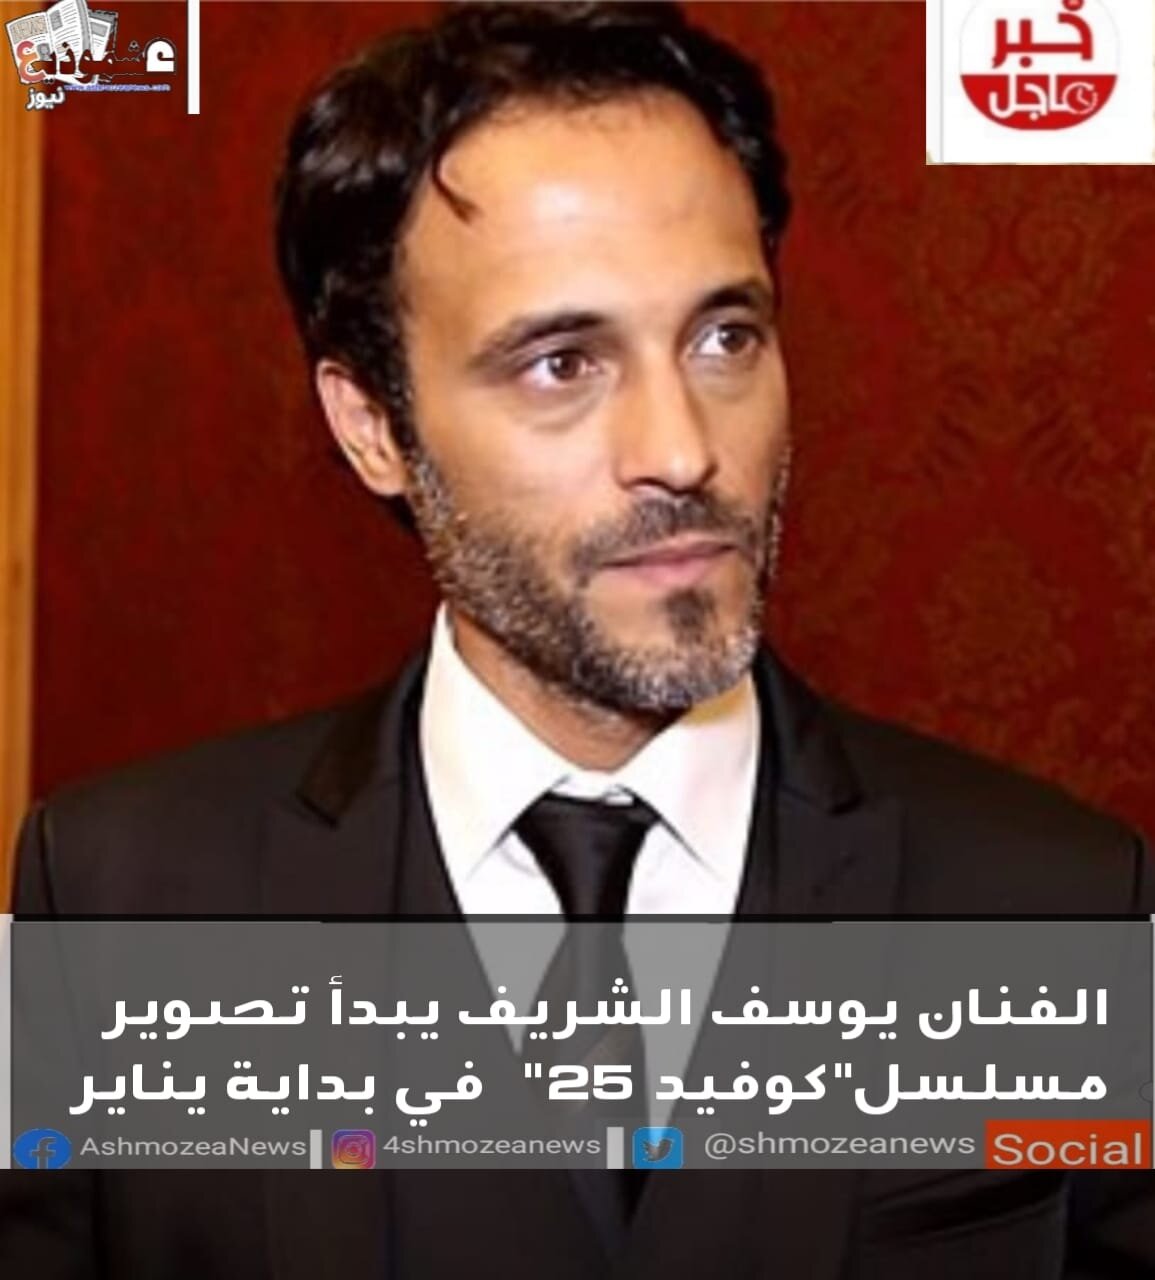 الفنان يوسف الشريف يبدأ تصوير مسلسل"كوفيد 25" في بداية يناير